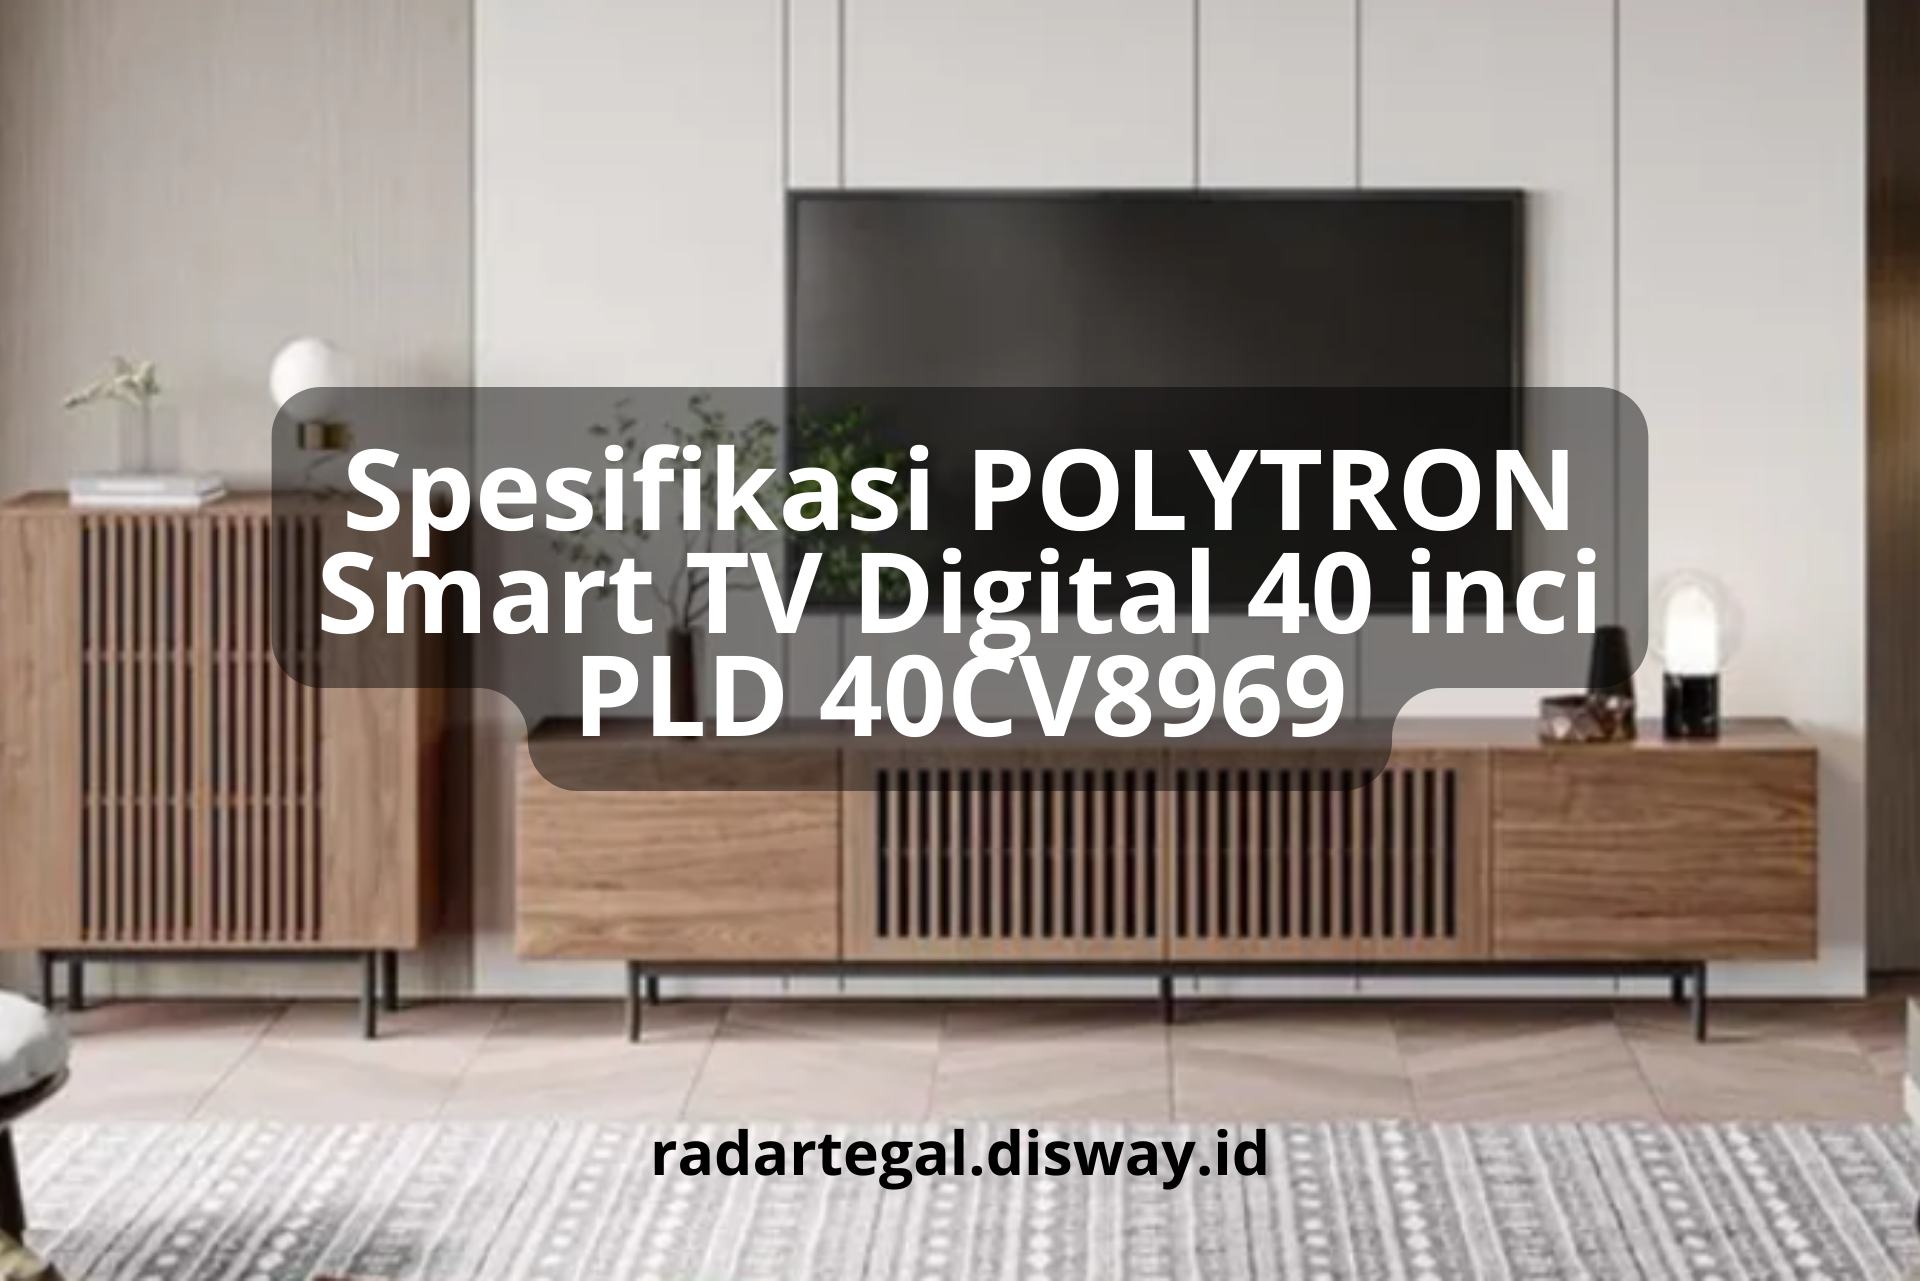 Spesifikasi Polytron Smart TV Digital 40 inci PLD 40CV8969, TV Pintar dengan Banyak Fitur-fitur Canggih